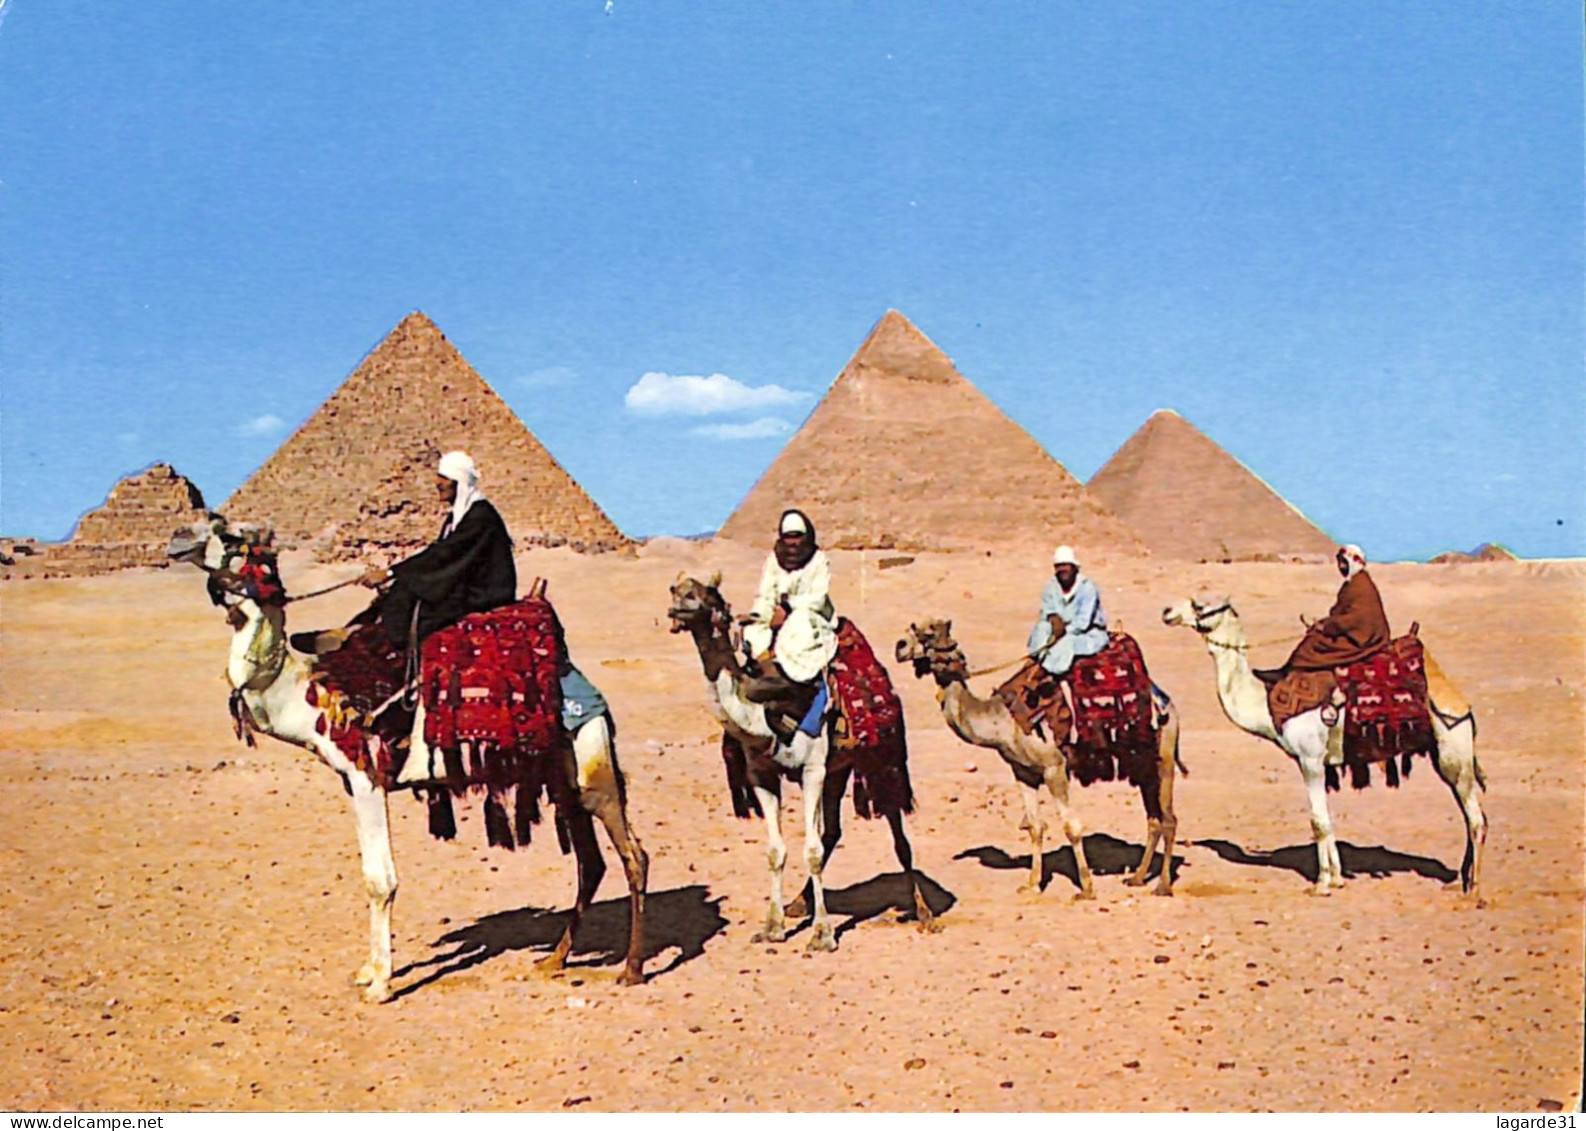 egypte lot de 29 cartes toutes scannées